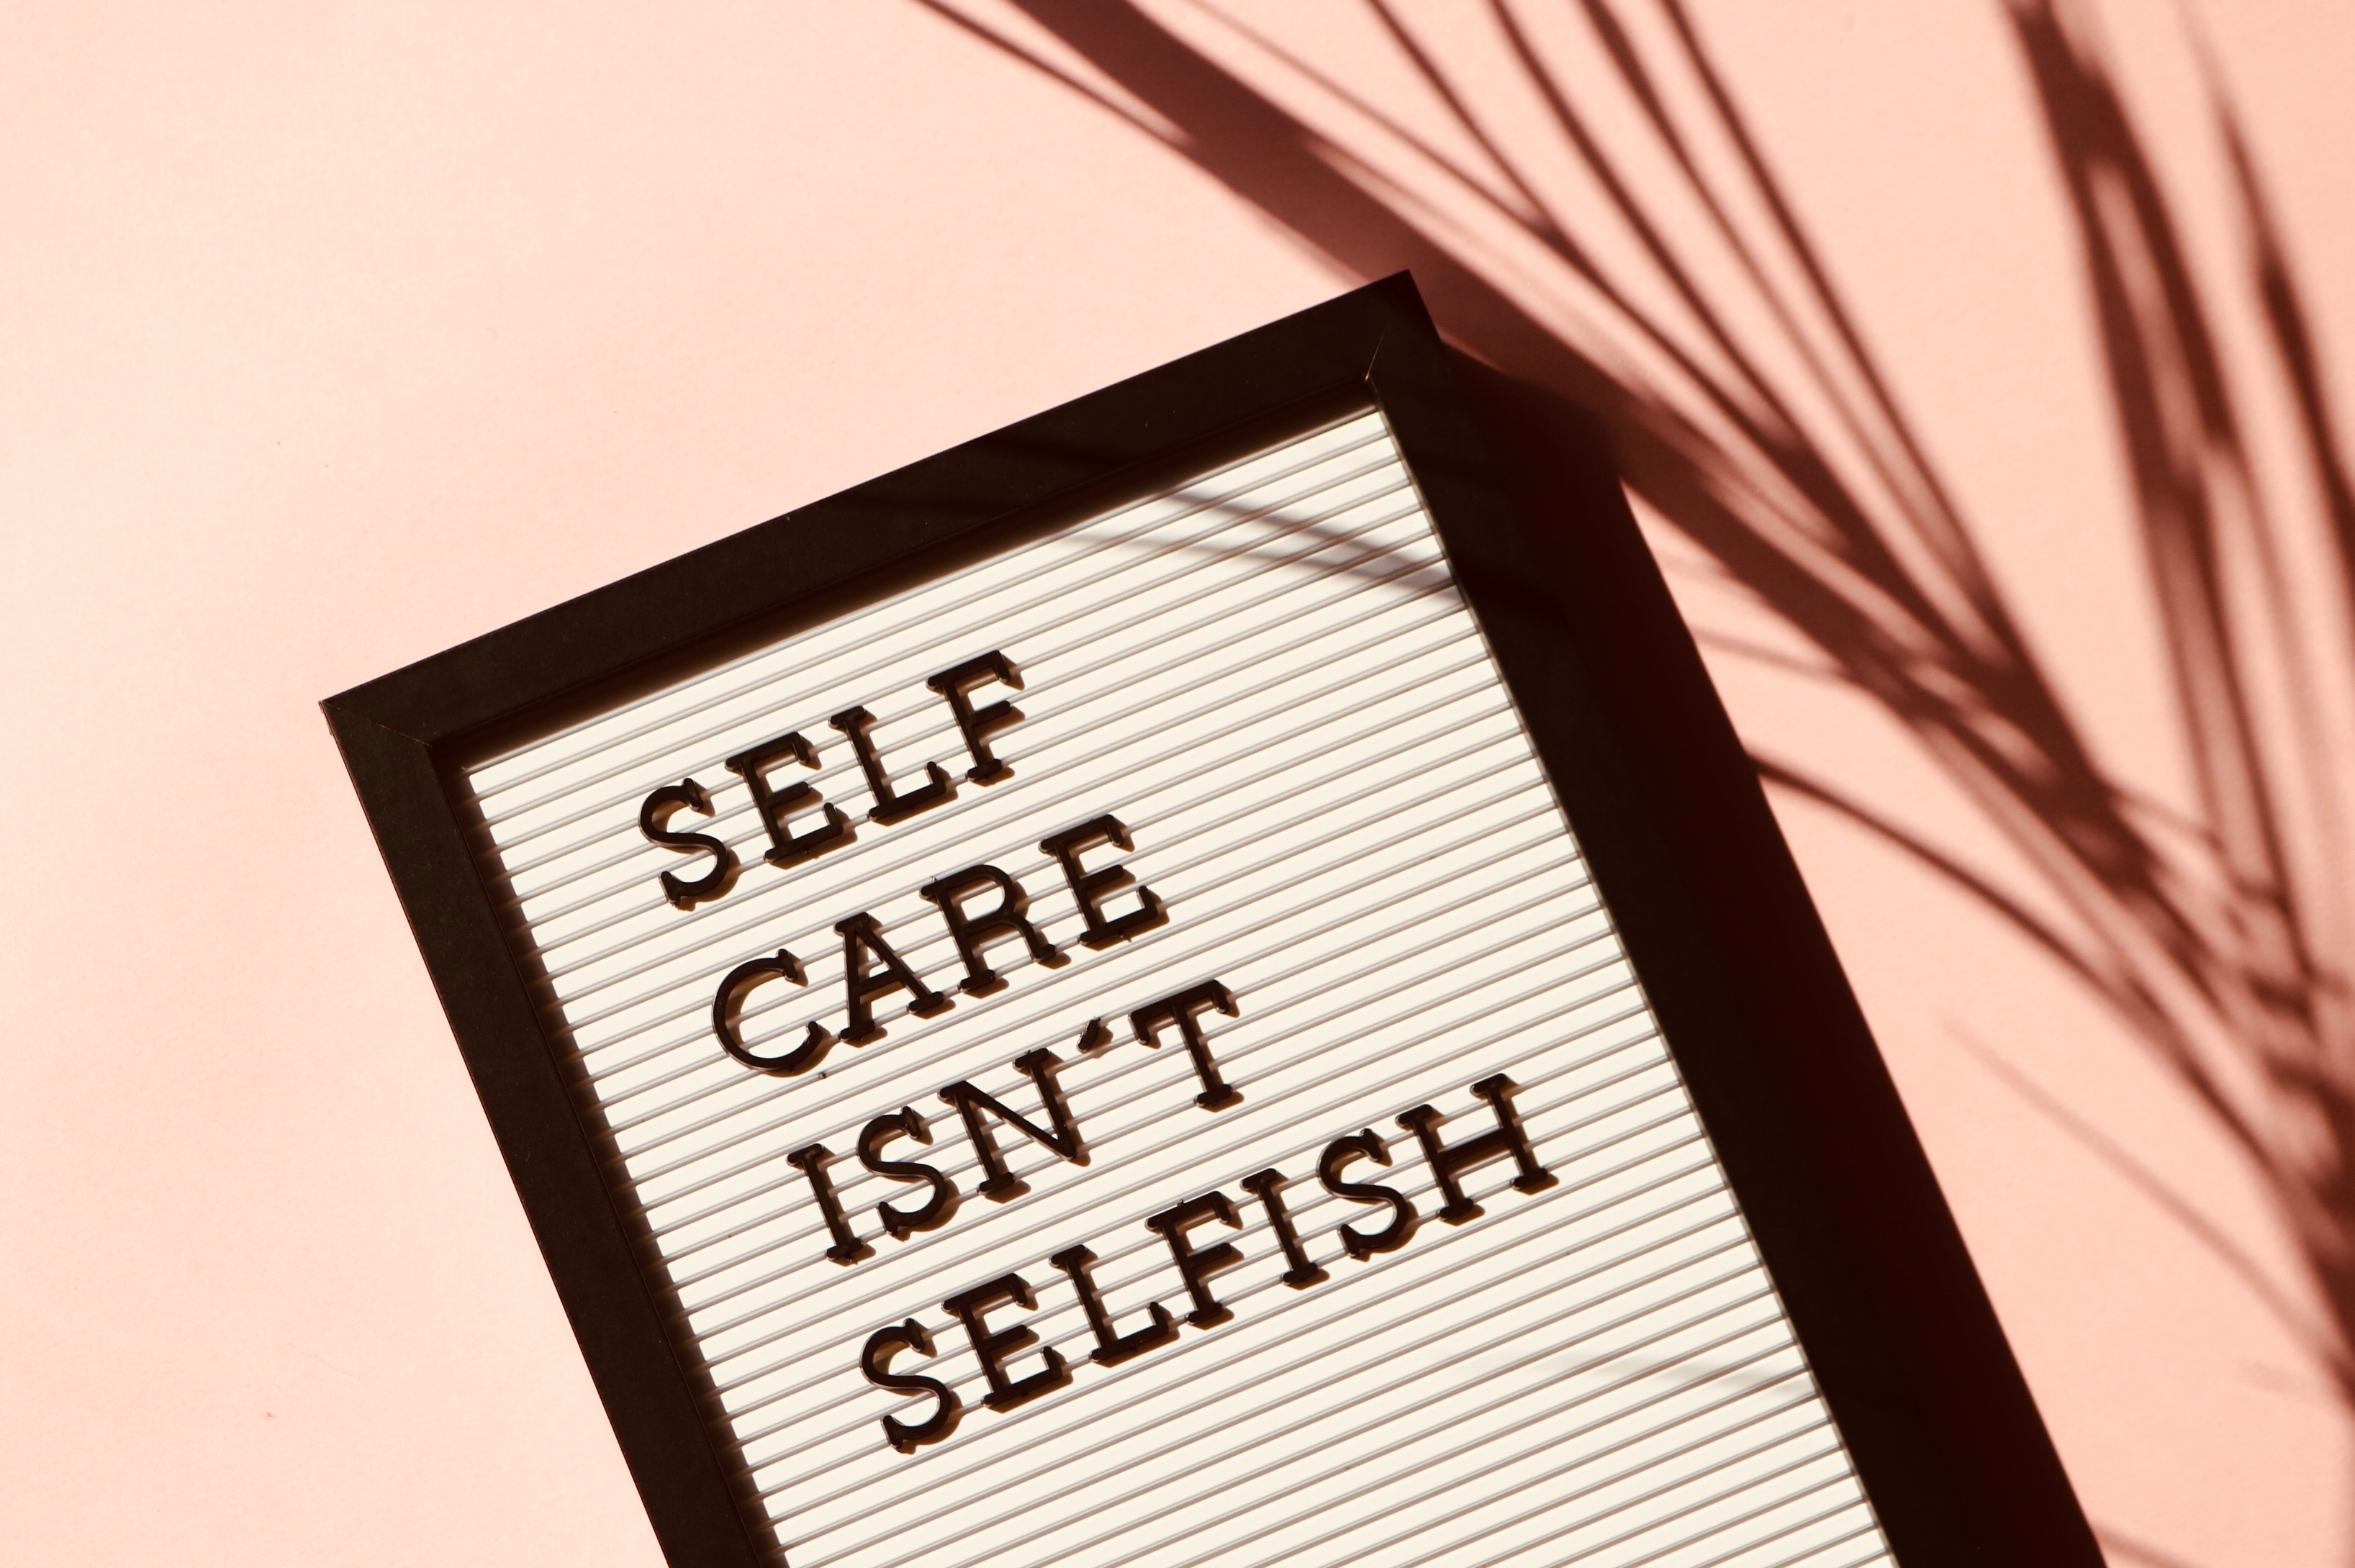 Self care isn't selfish poster